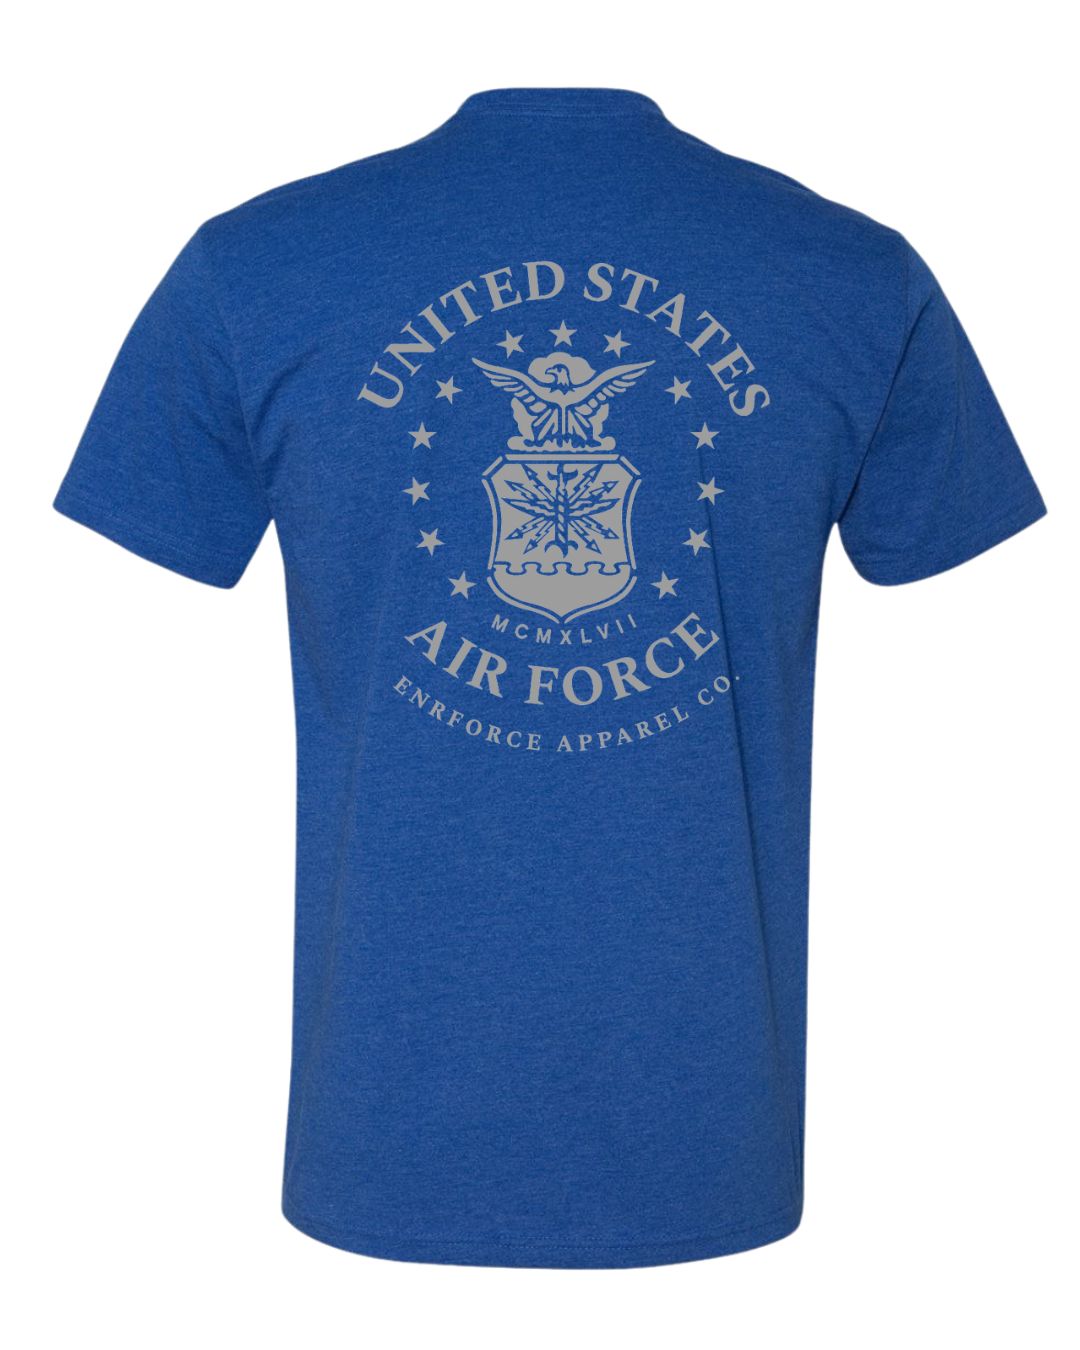 Air Force Tee